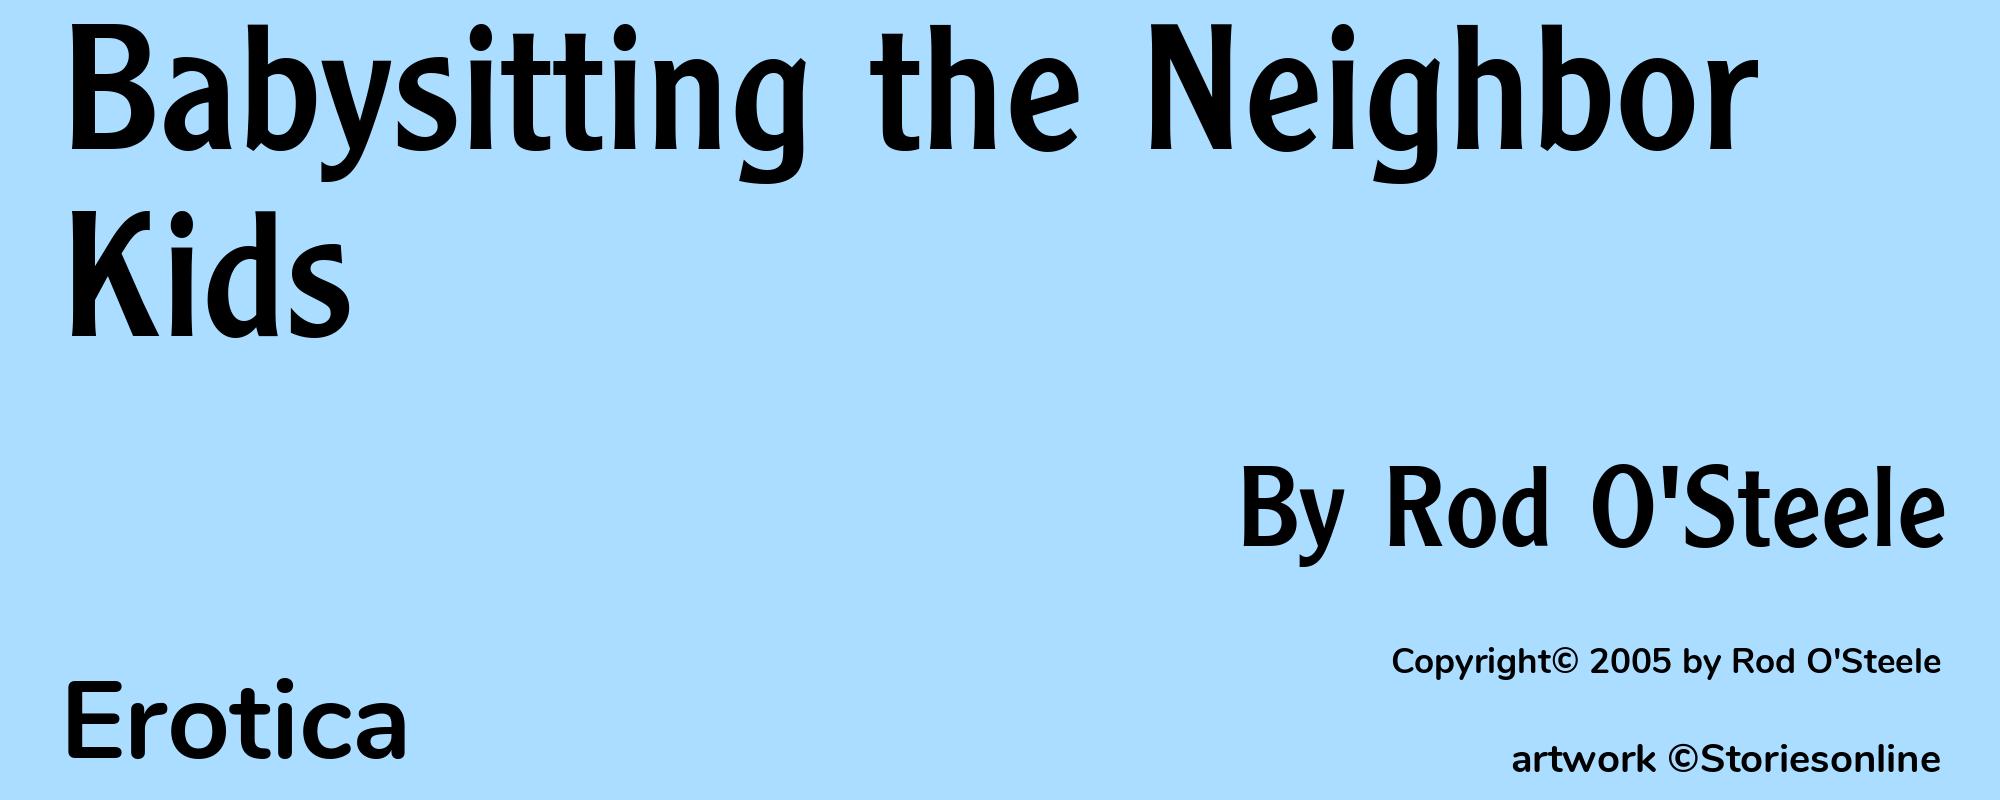 Babysitting the Neighbor Kids - Cover